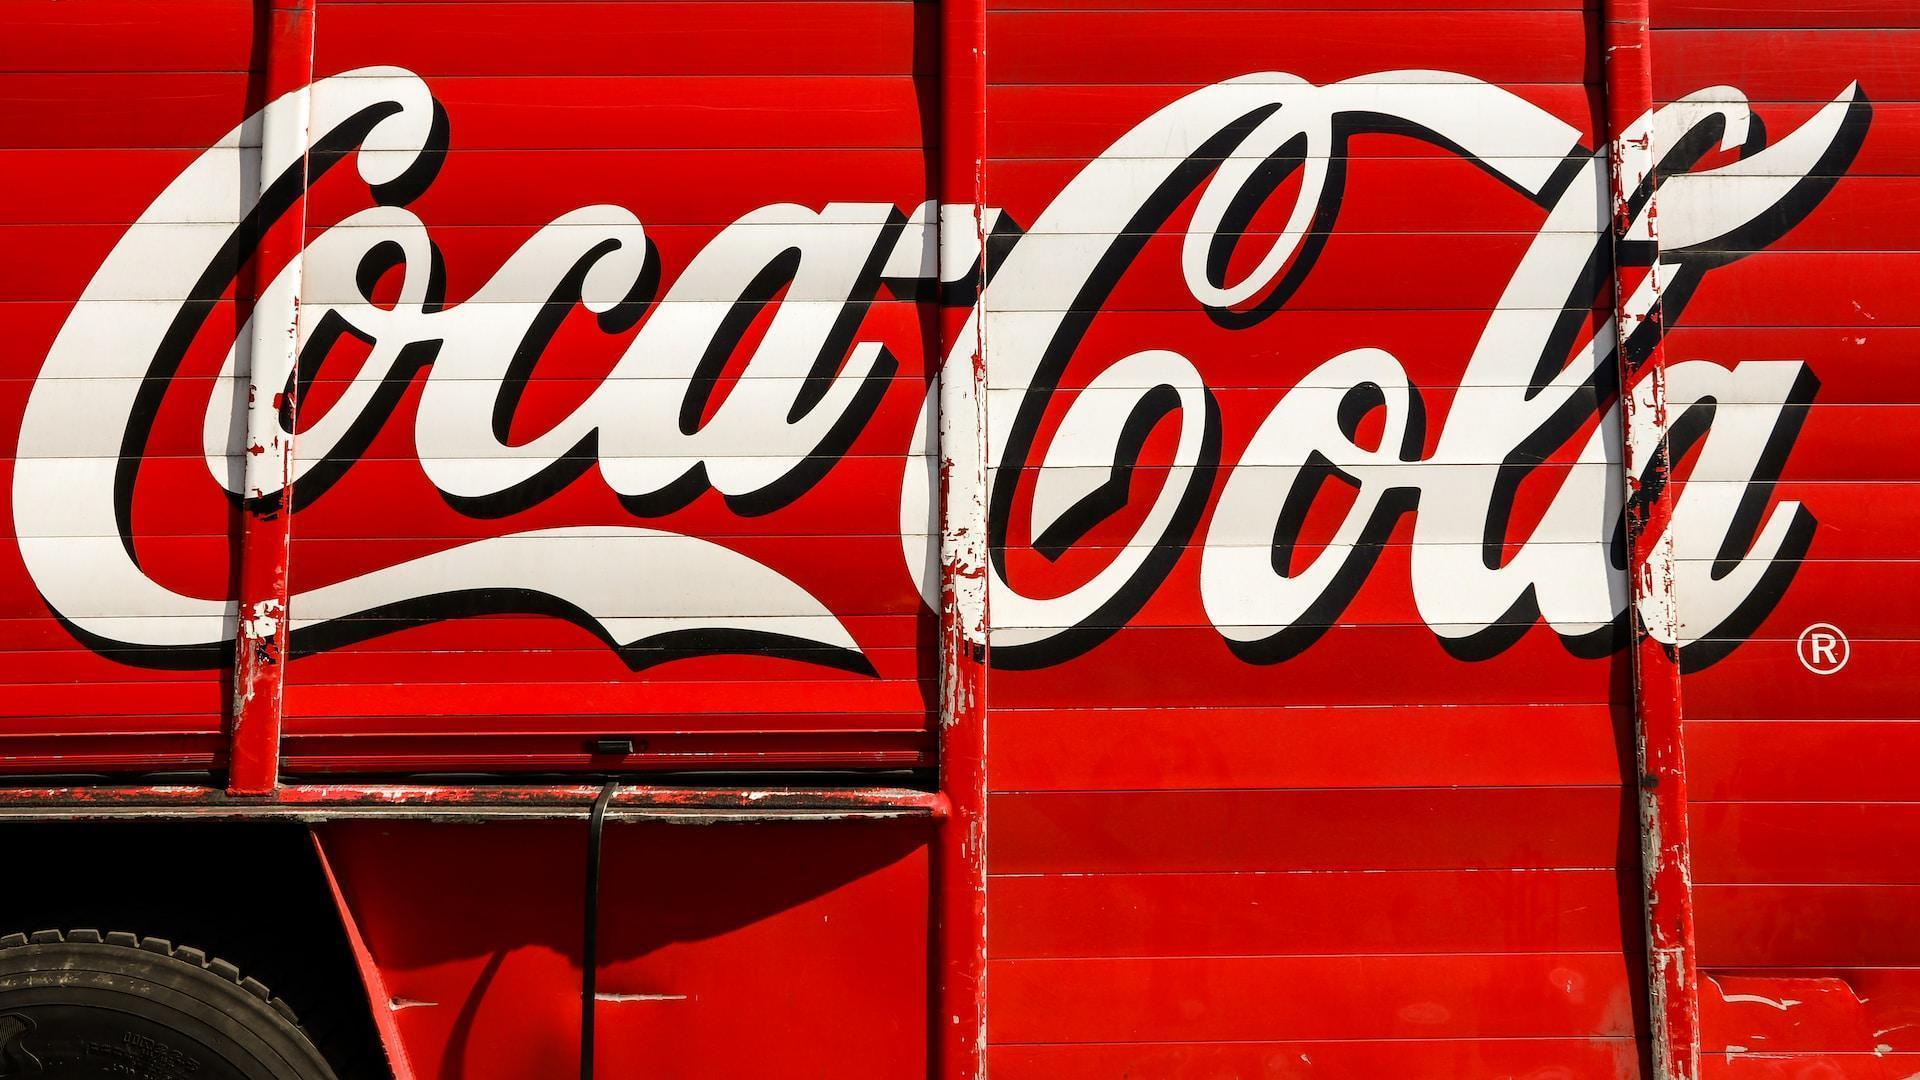 Le naming de Coca-Cola